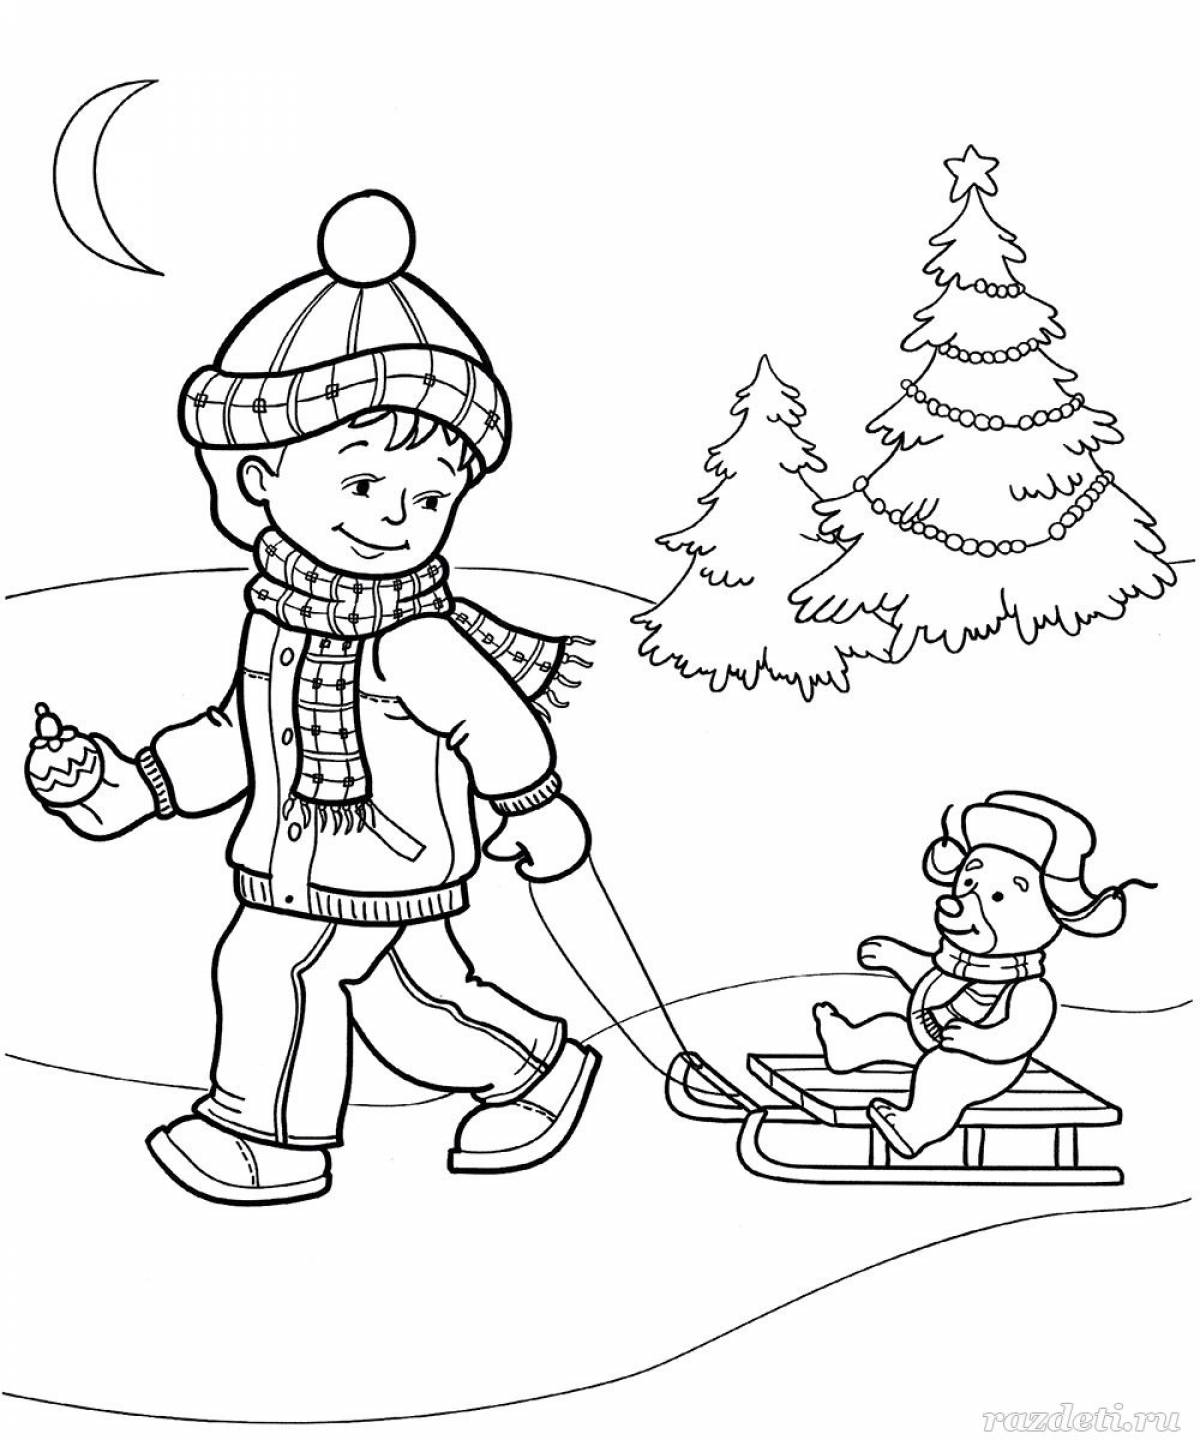 Раскраски зима для детей - Распечатать, Скачать и Онлайн!